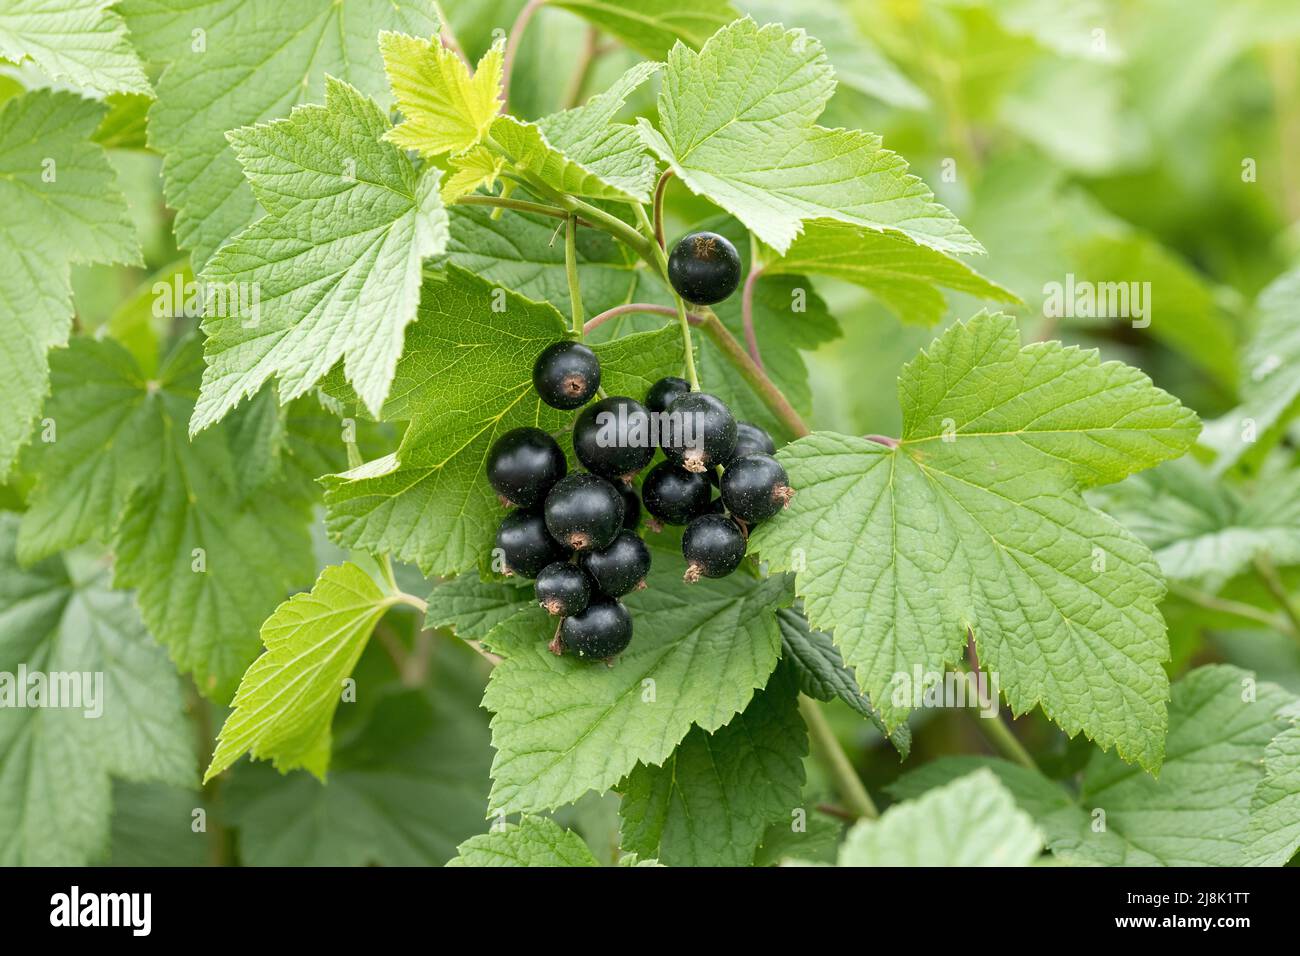 Europäische schwarze Johannisbeere (Ribes nigrum 'Tsema', Ribes nigrum Tsema), schwarze Johannisbeeren, Sorte Tsema Stockfoto